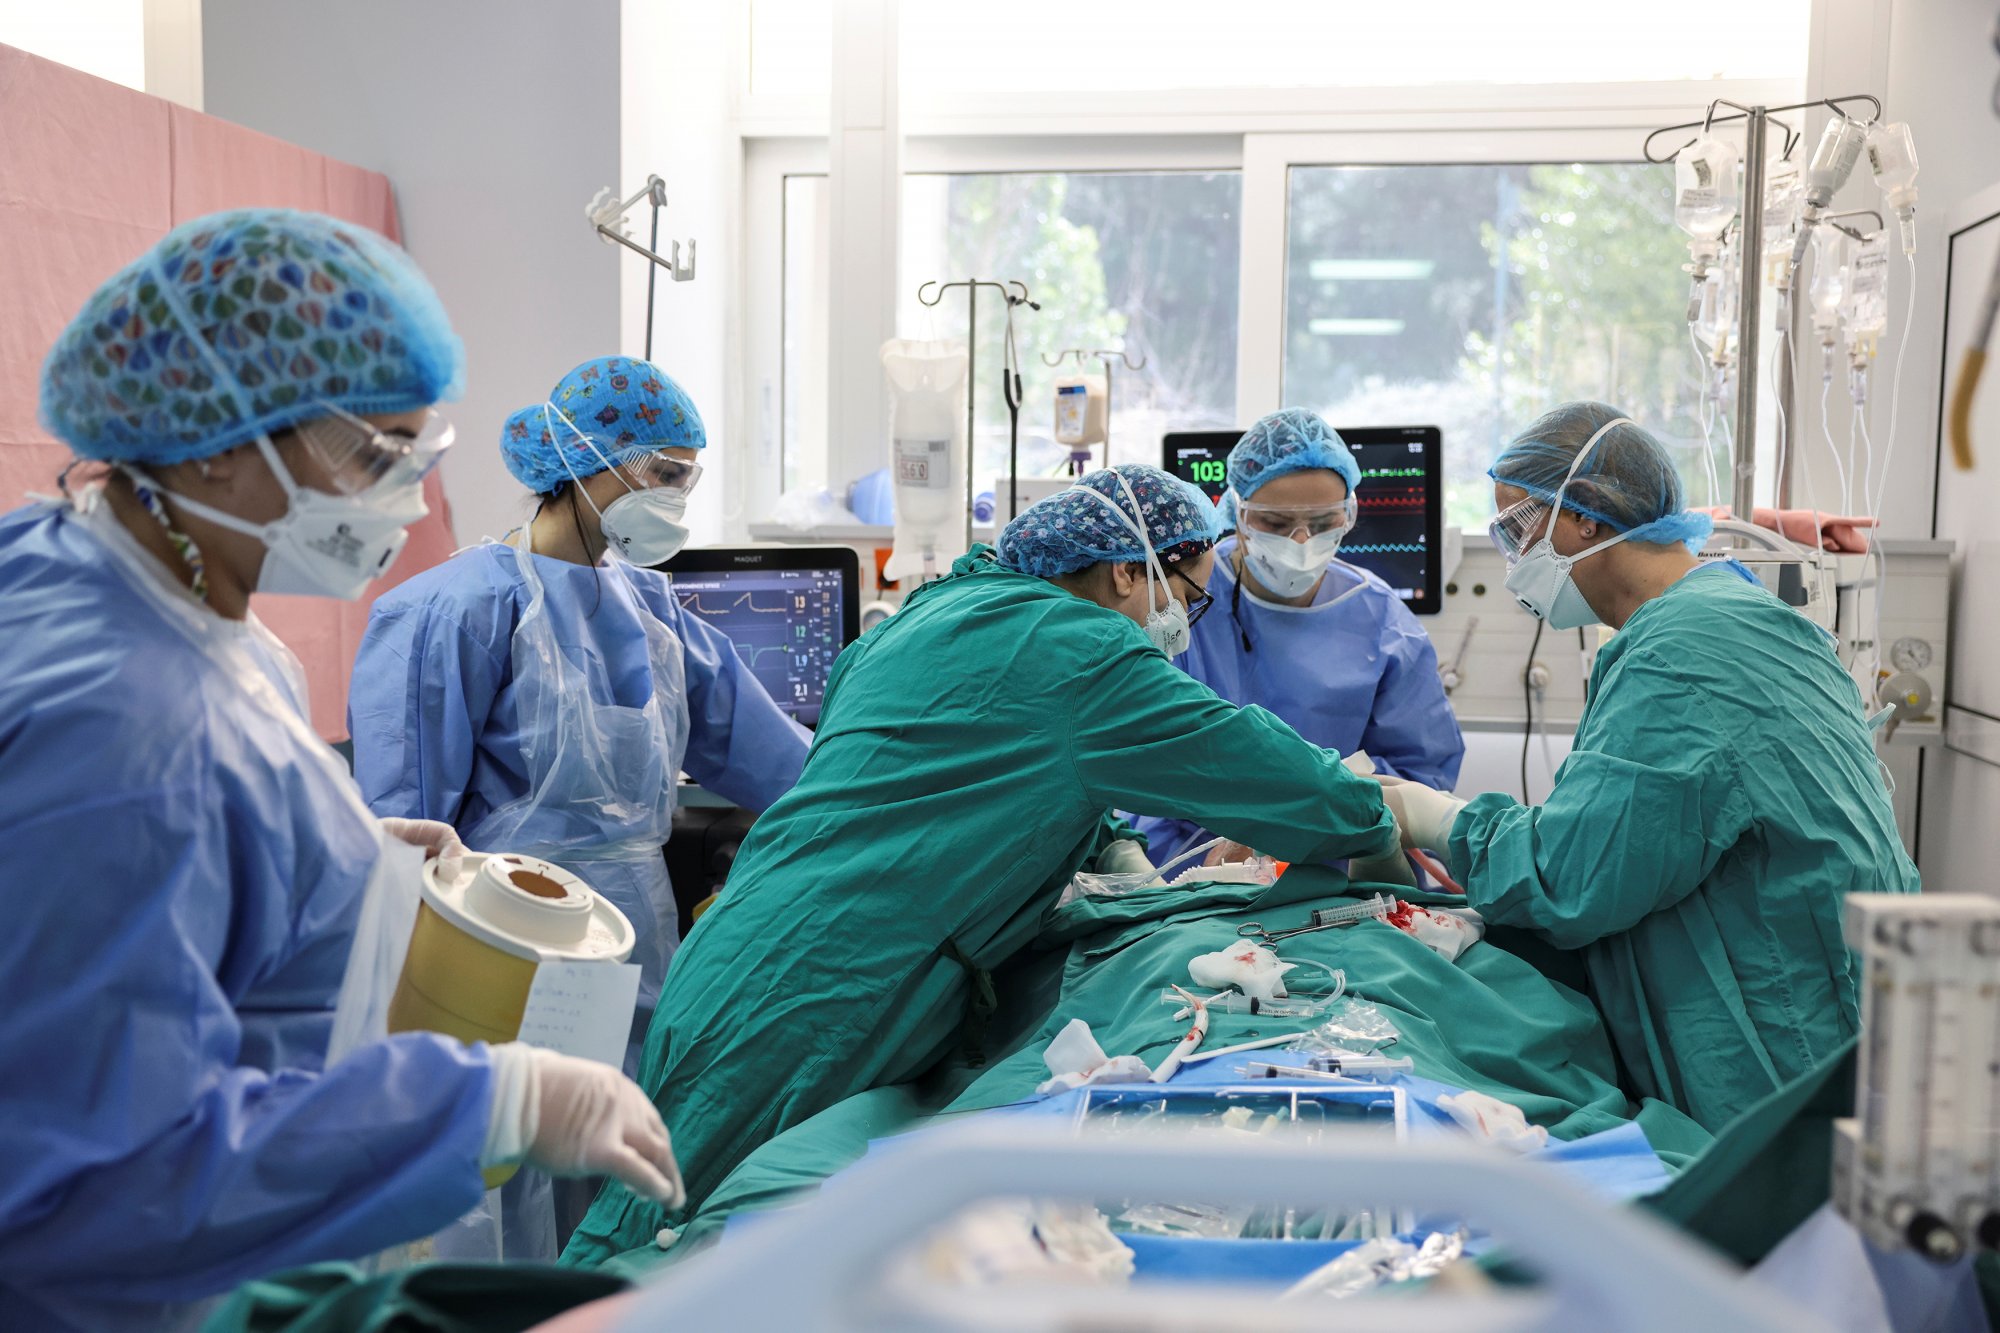 Κοροναϊός: Οι νοσηλείες σε ΜΕΘ στα χαμηλότερα επίπεδα από την αρχή της πανδημίας